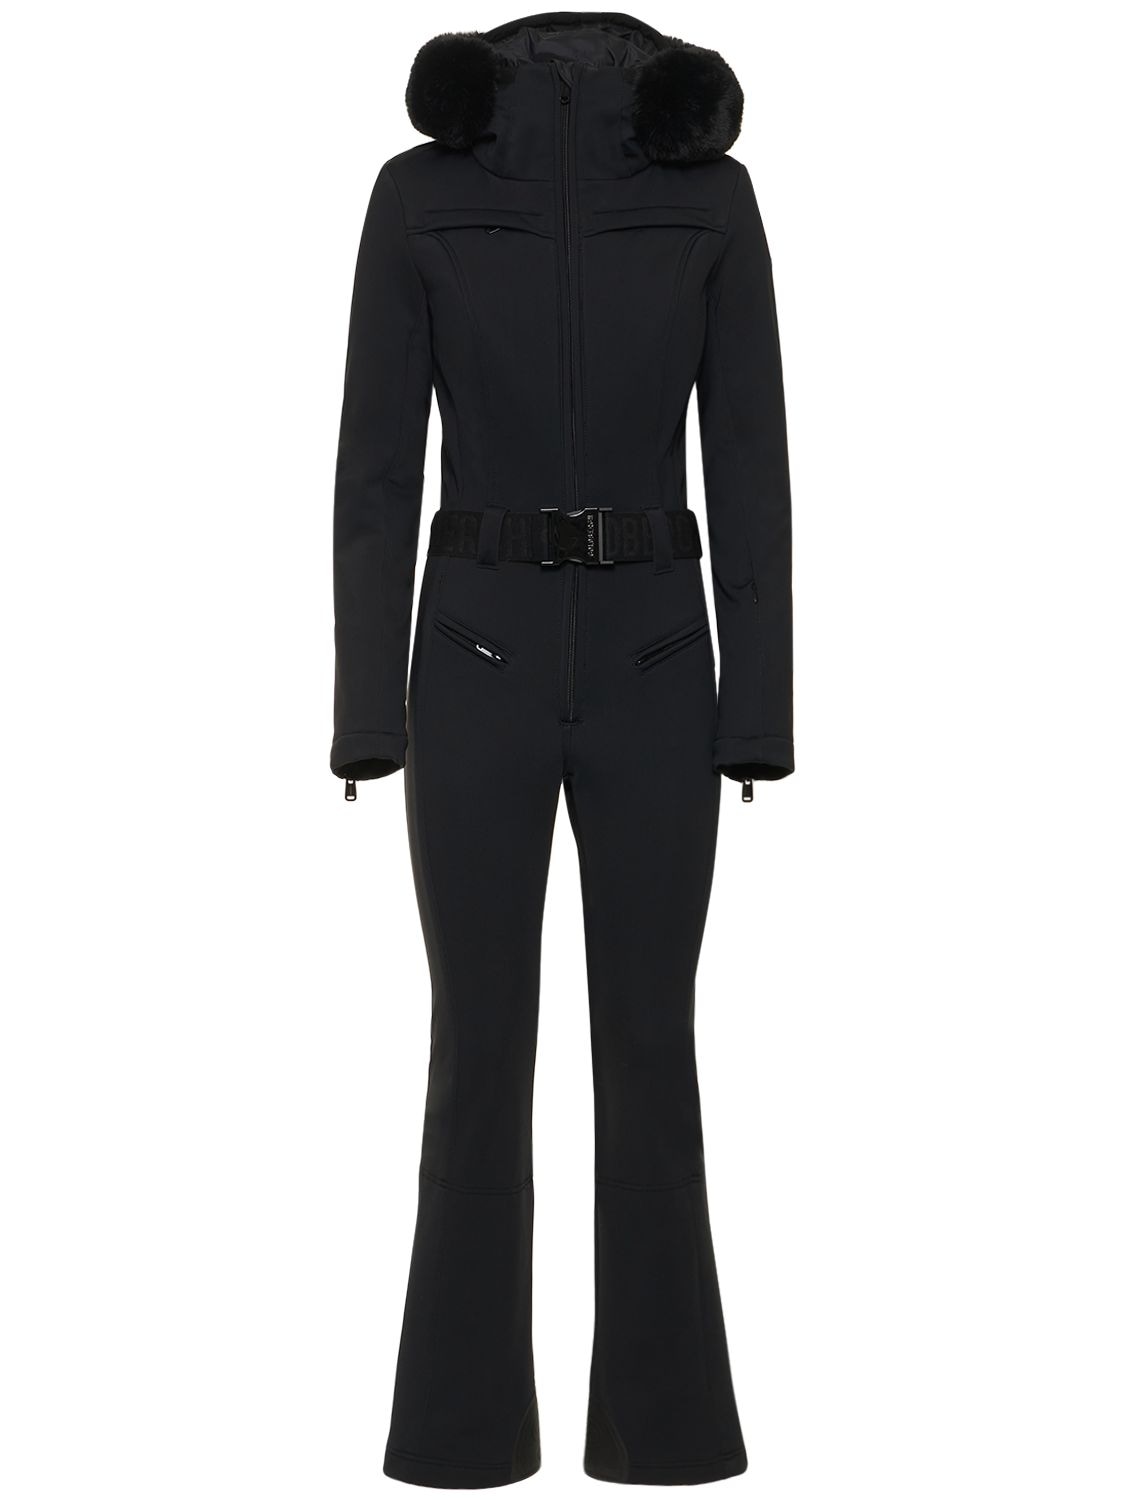 Shop Goldbergh Parry Ski Suit W/ Faux Fur Trim In Black